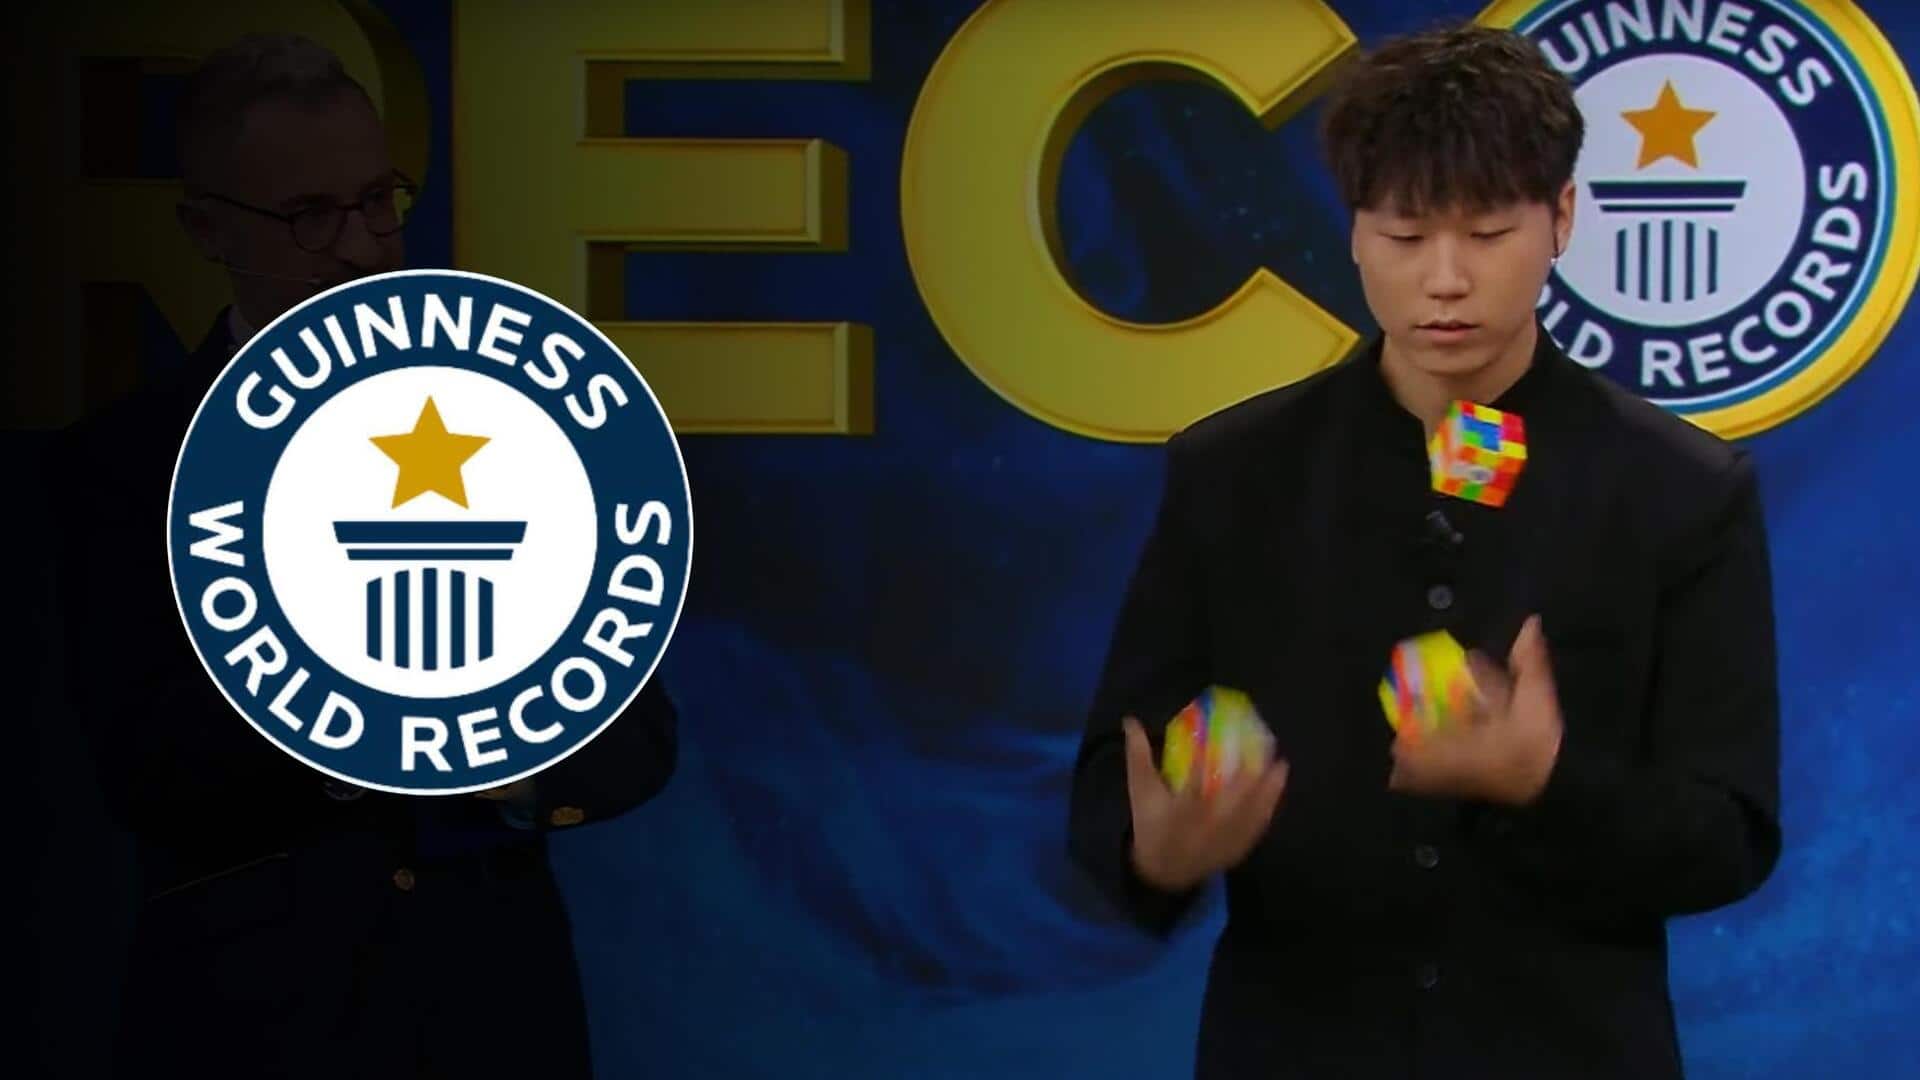 चीन: व्यक्ति ने करतब दिखाते हुए 3 मिनट में हल किए 3 रुबिक क्यूब, बनाया रिकॉर्ड